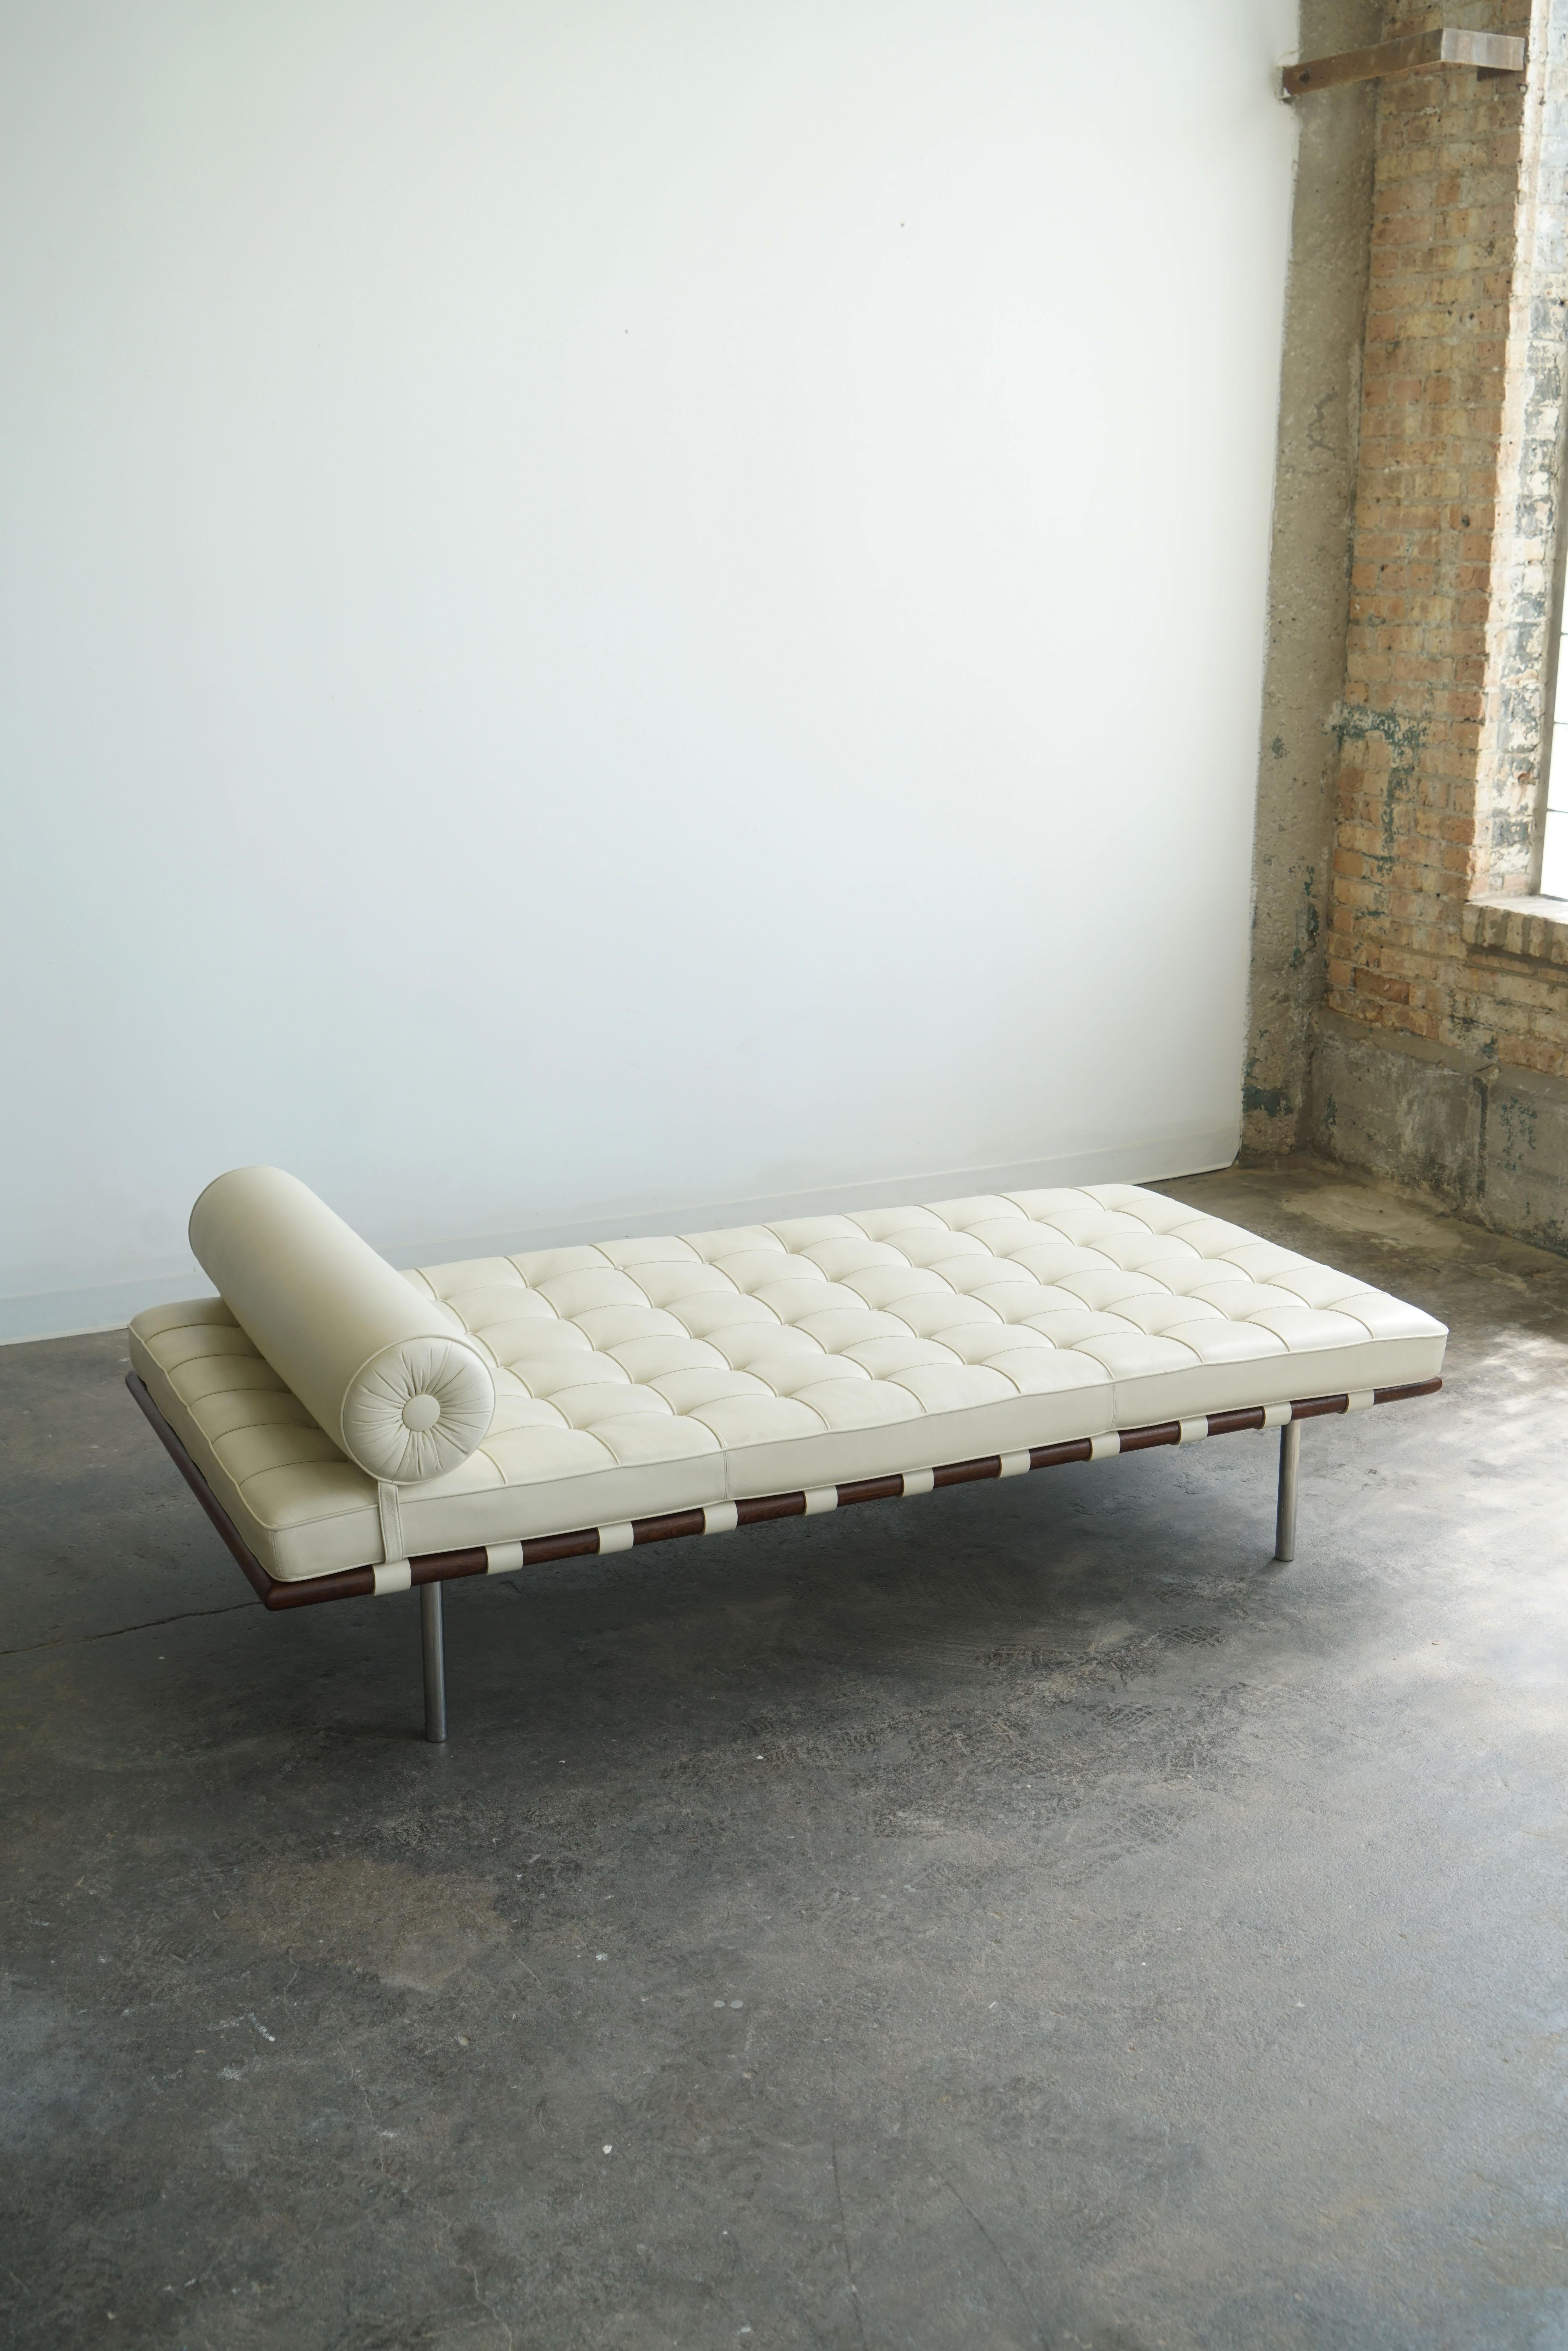 Knoll Barcelona Couch / Daybed, Modell 258L.
Entworfen von Mies van der Rohe, ursprünglich im Jahr 1930. 
in Leder Volo 